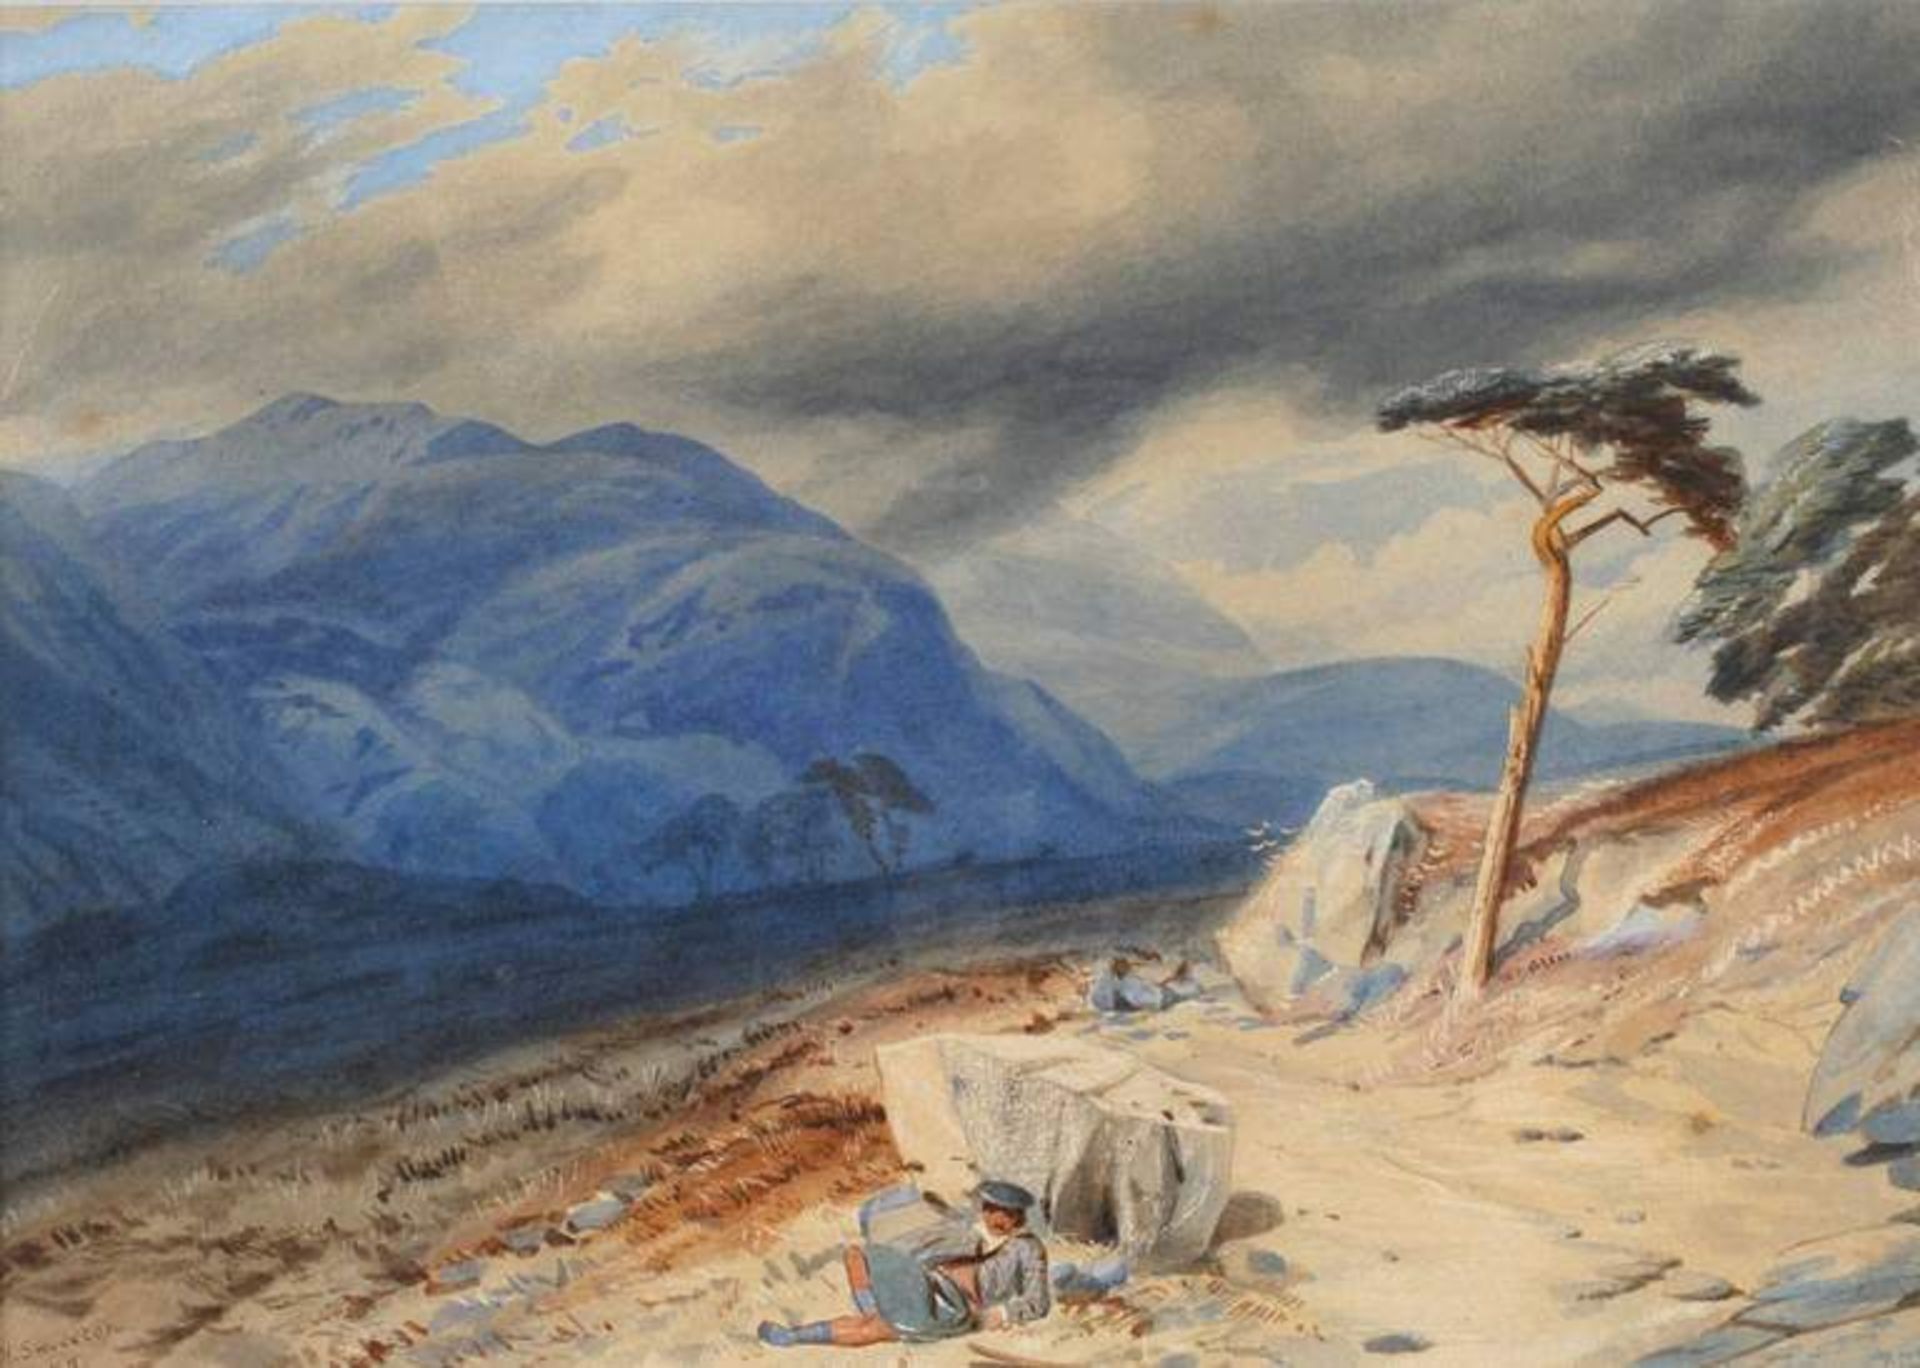 A. W. Smeeton, Ruhender Wanderer im Gebirge Blick auf eine imposante Bergkulisse mit aufziehenden